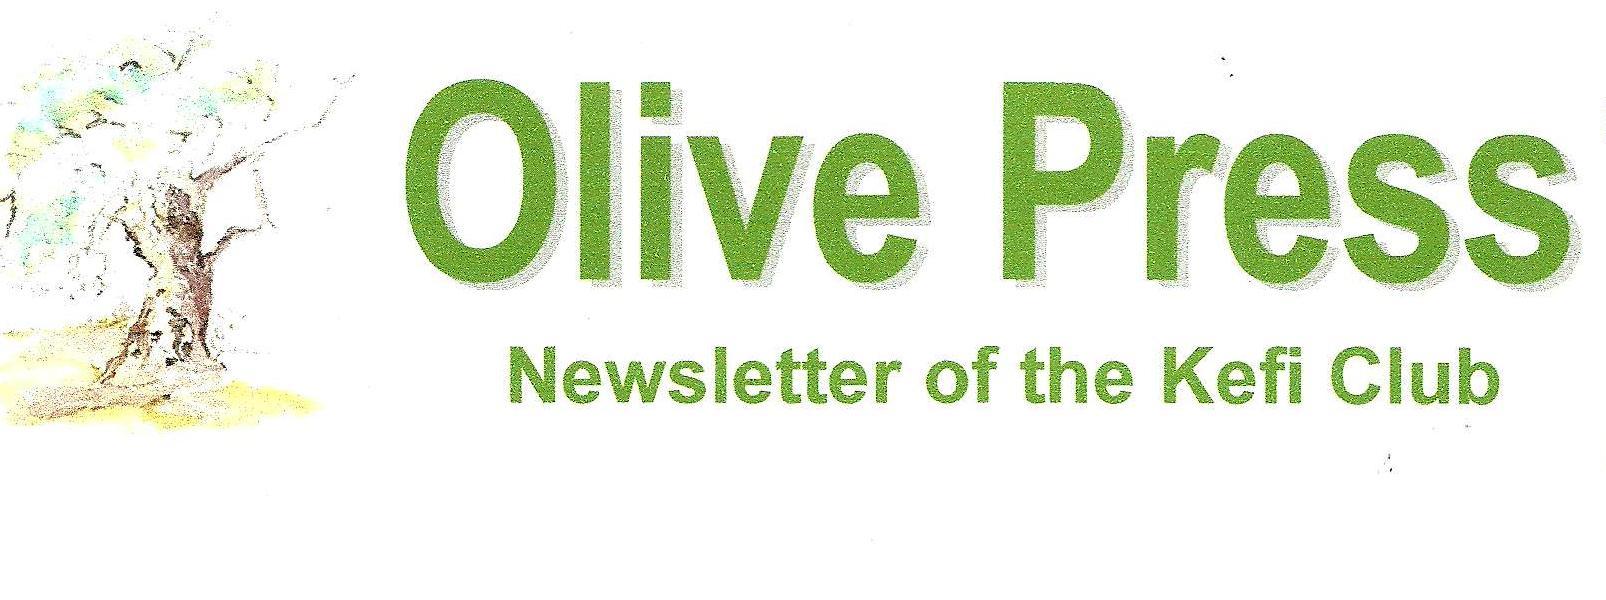 Olive Press